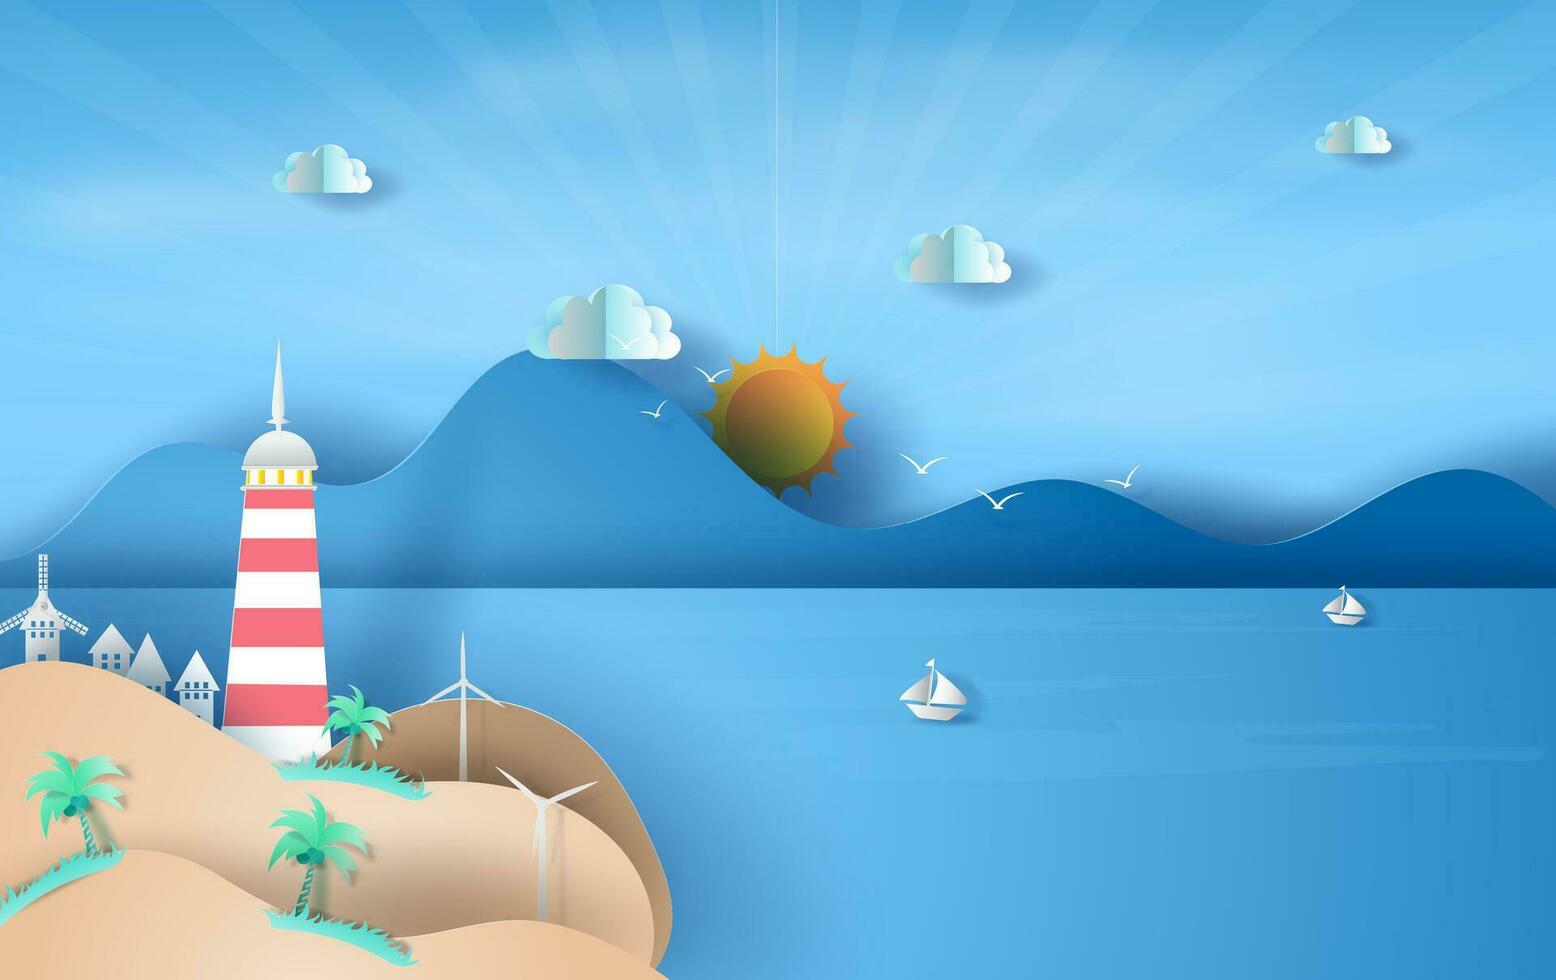 ilustración de isla con faro en mar ver luz de sol azul cielo, verano hora temporada concepto, barco flotante en el mar en azul cielo.gráfico diseño playa paisaje, papel arte y cortar idea, vector. vector